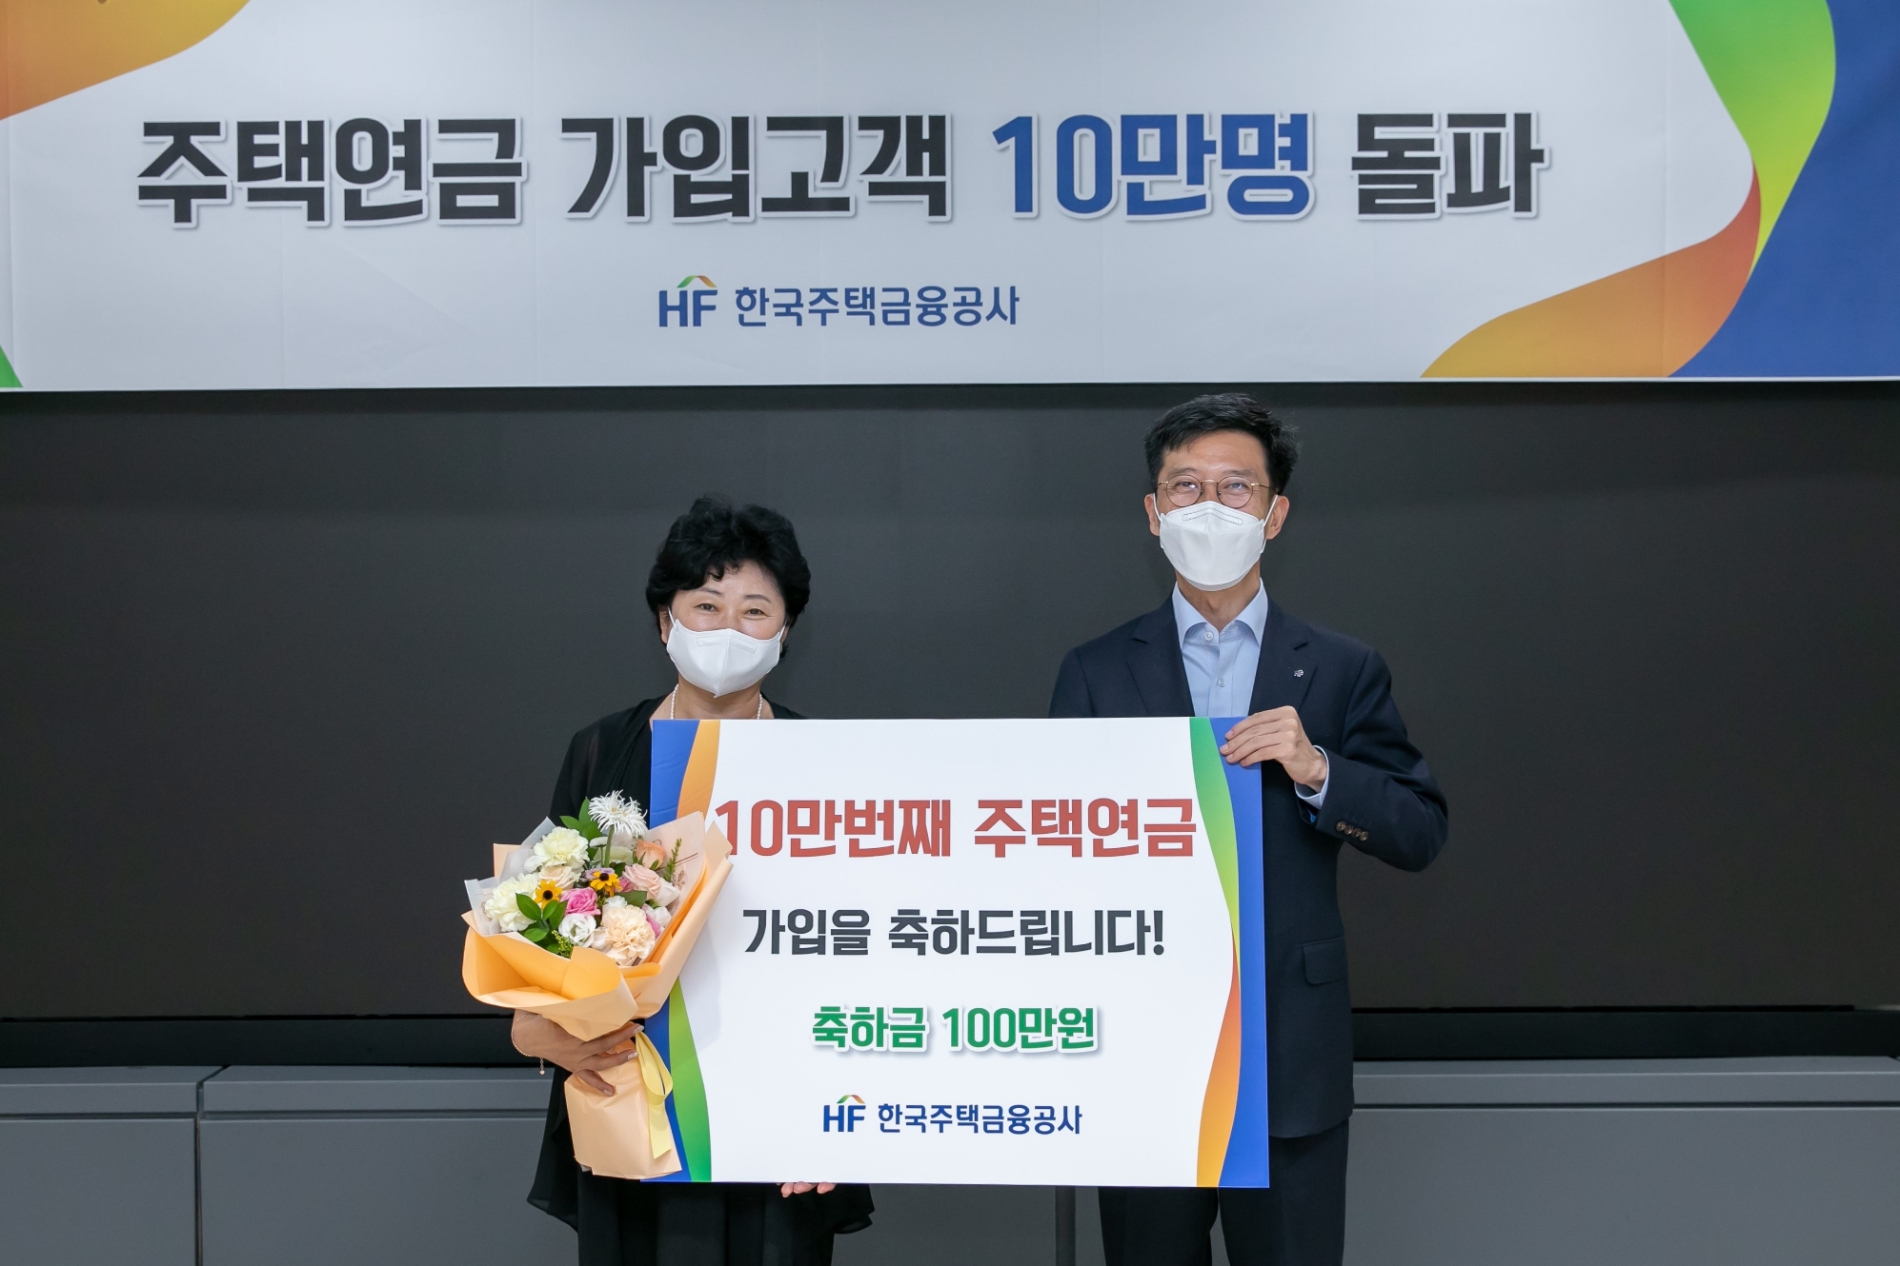 최준우 주택금융공사 사장(사진 오른쪽)이 18일 서울시 세종대로 WISE타워에서 주택연금 10만번째 가입자에게 축하금과 감사의 마음을 전달하며 기념촬영을 하고 있다./사진제공=한국주책금융공사